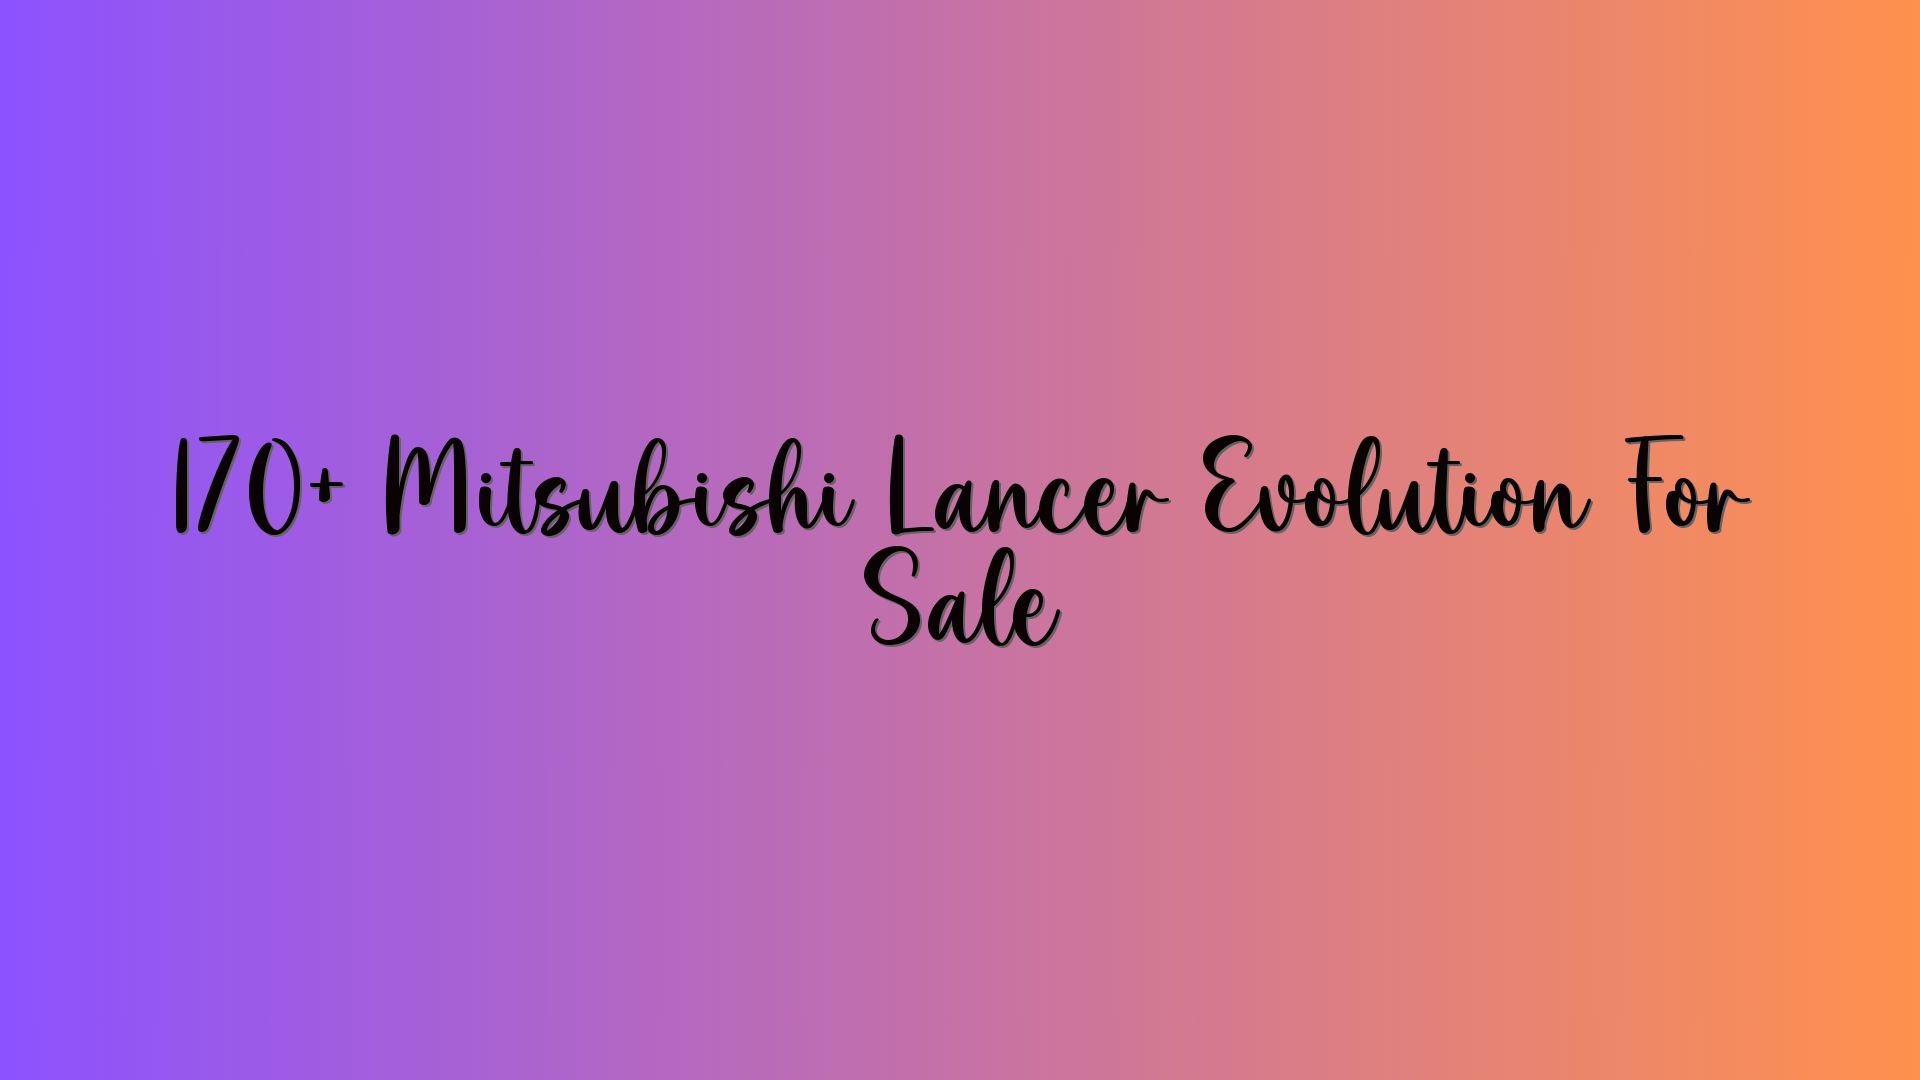 170+ Mitsubishi Lancer Evolution For Sale